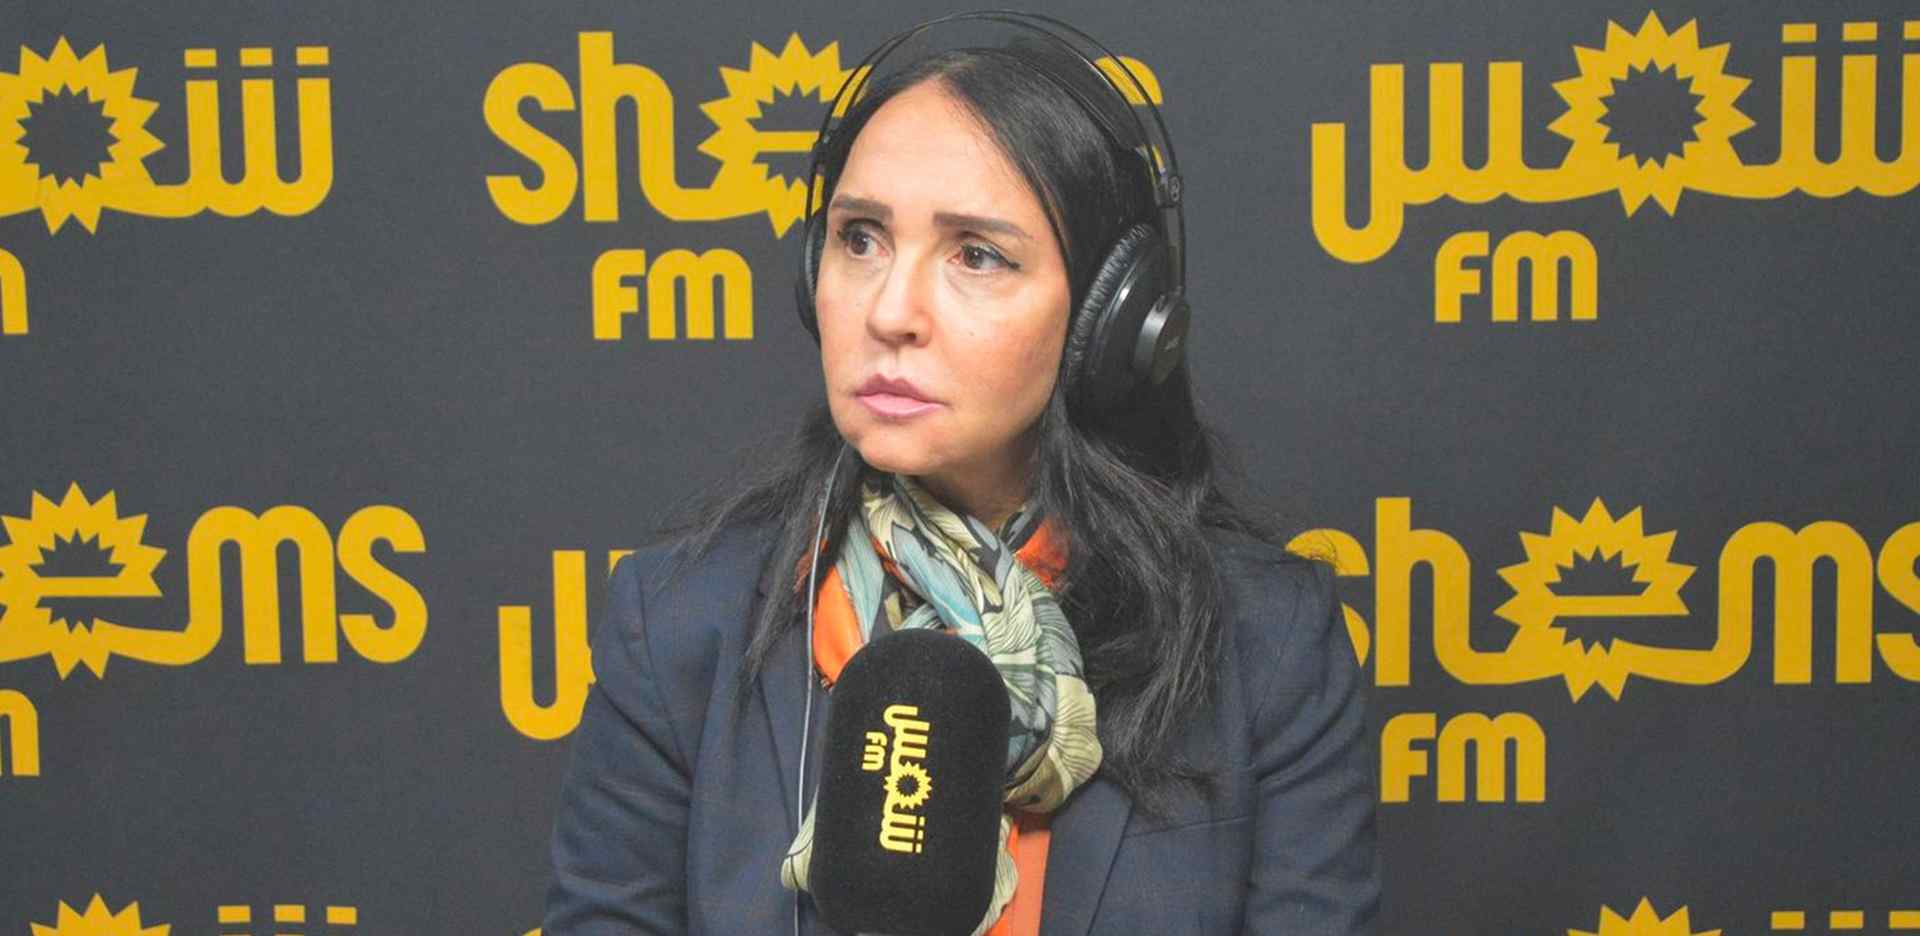 Tunisie – Mariem Belkadhi quitte le navire Shems FM à la dérive